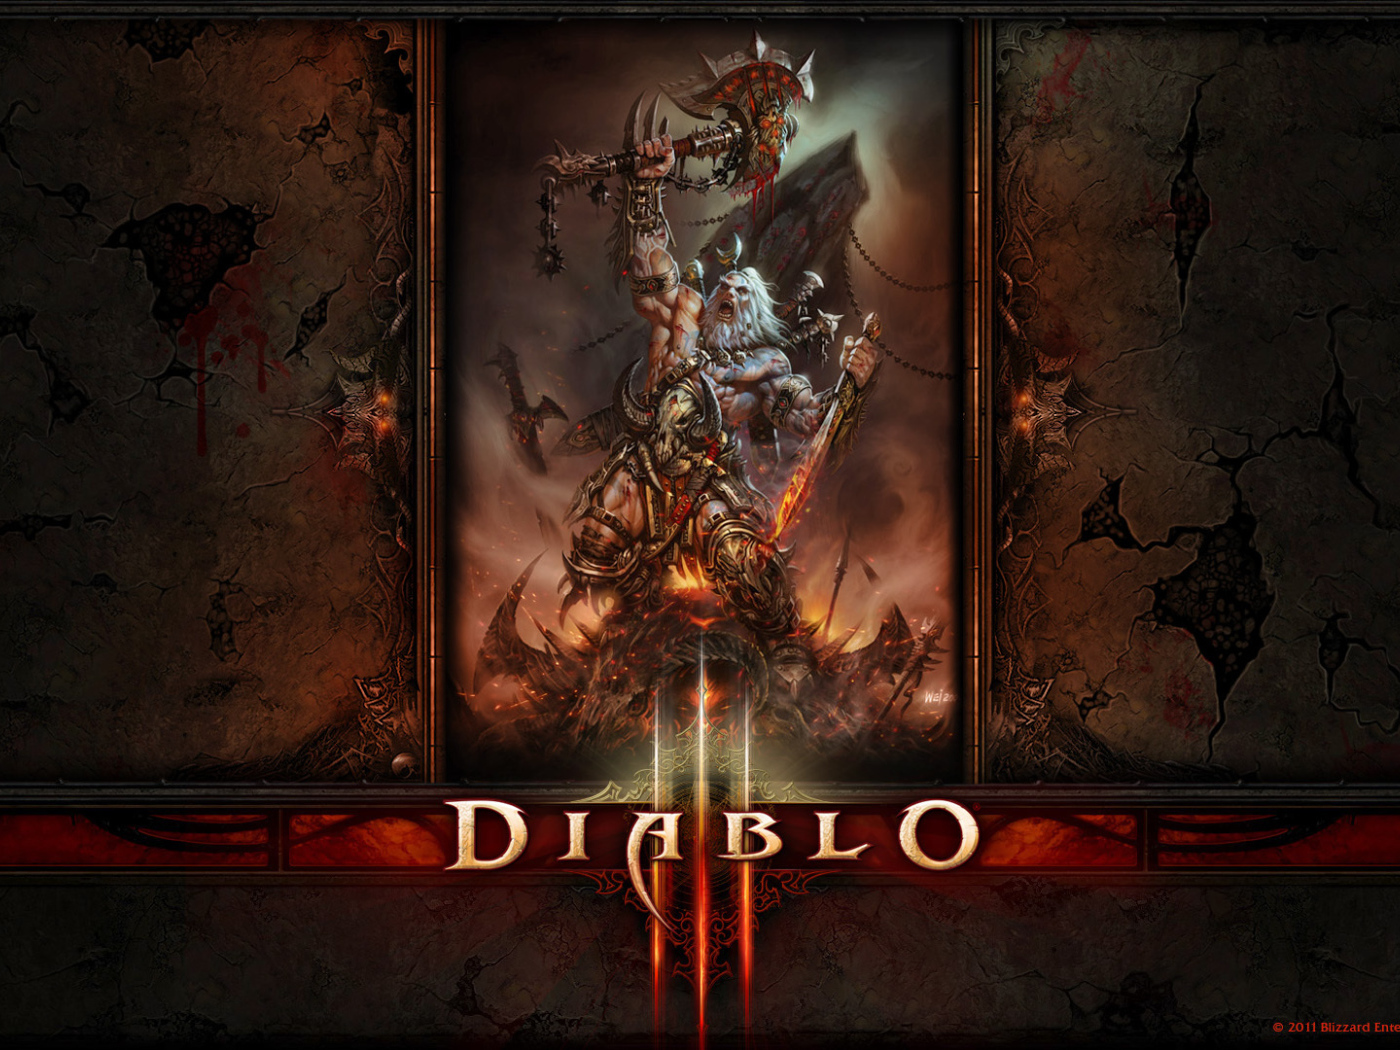 Diablo III: the barbarian